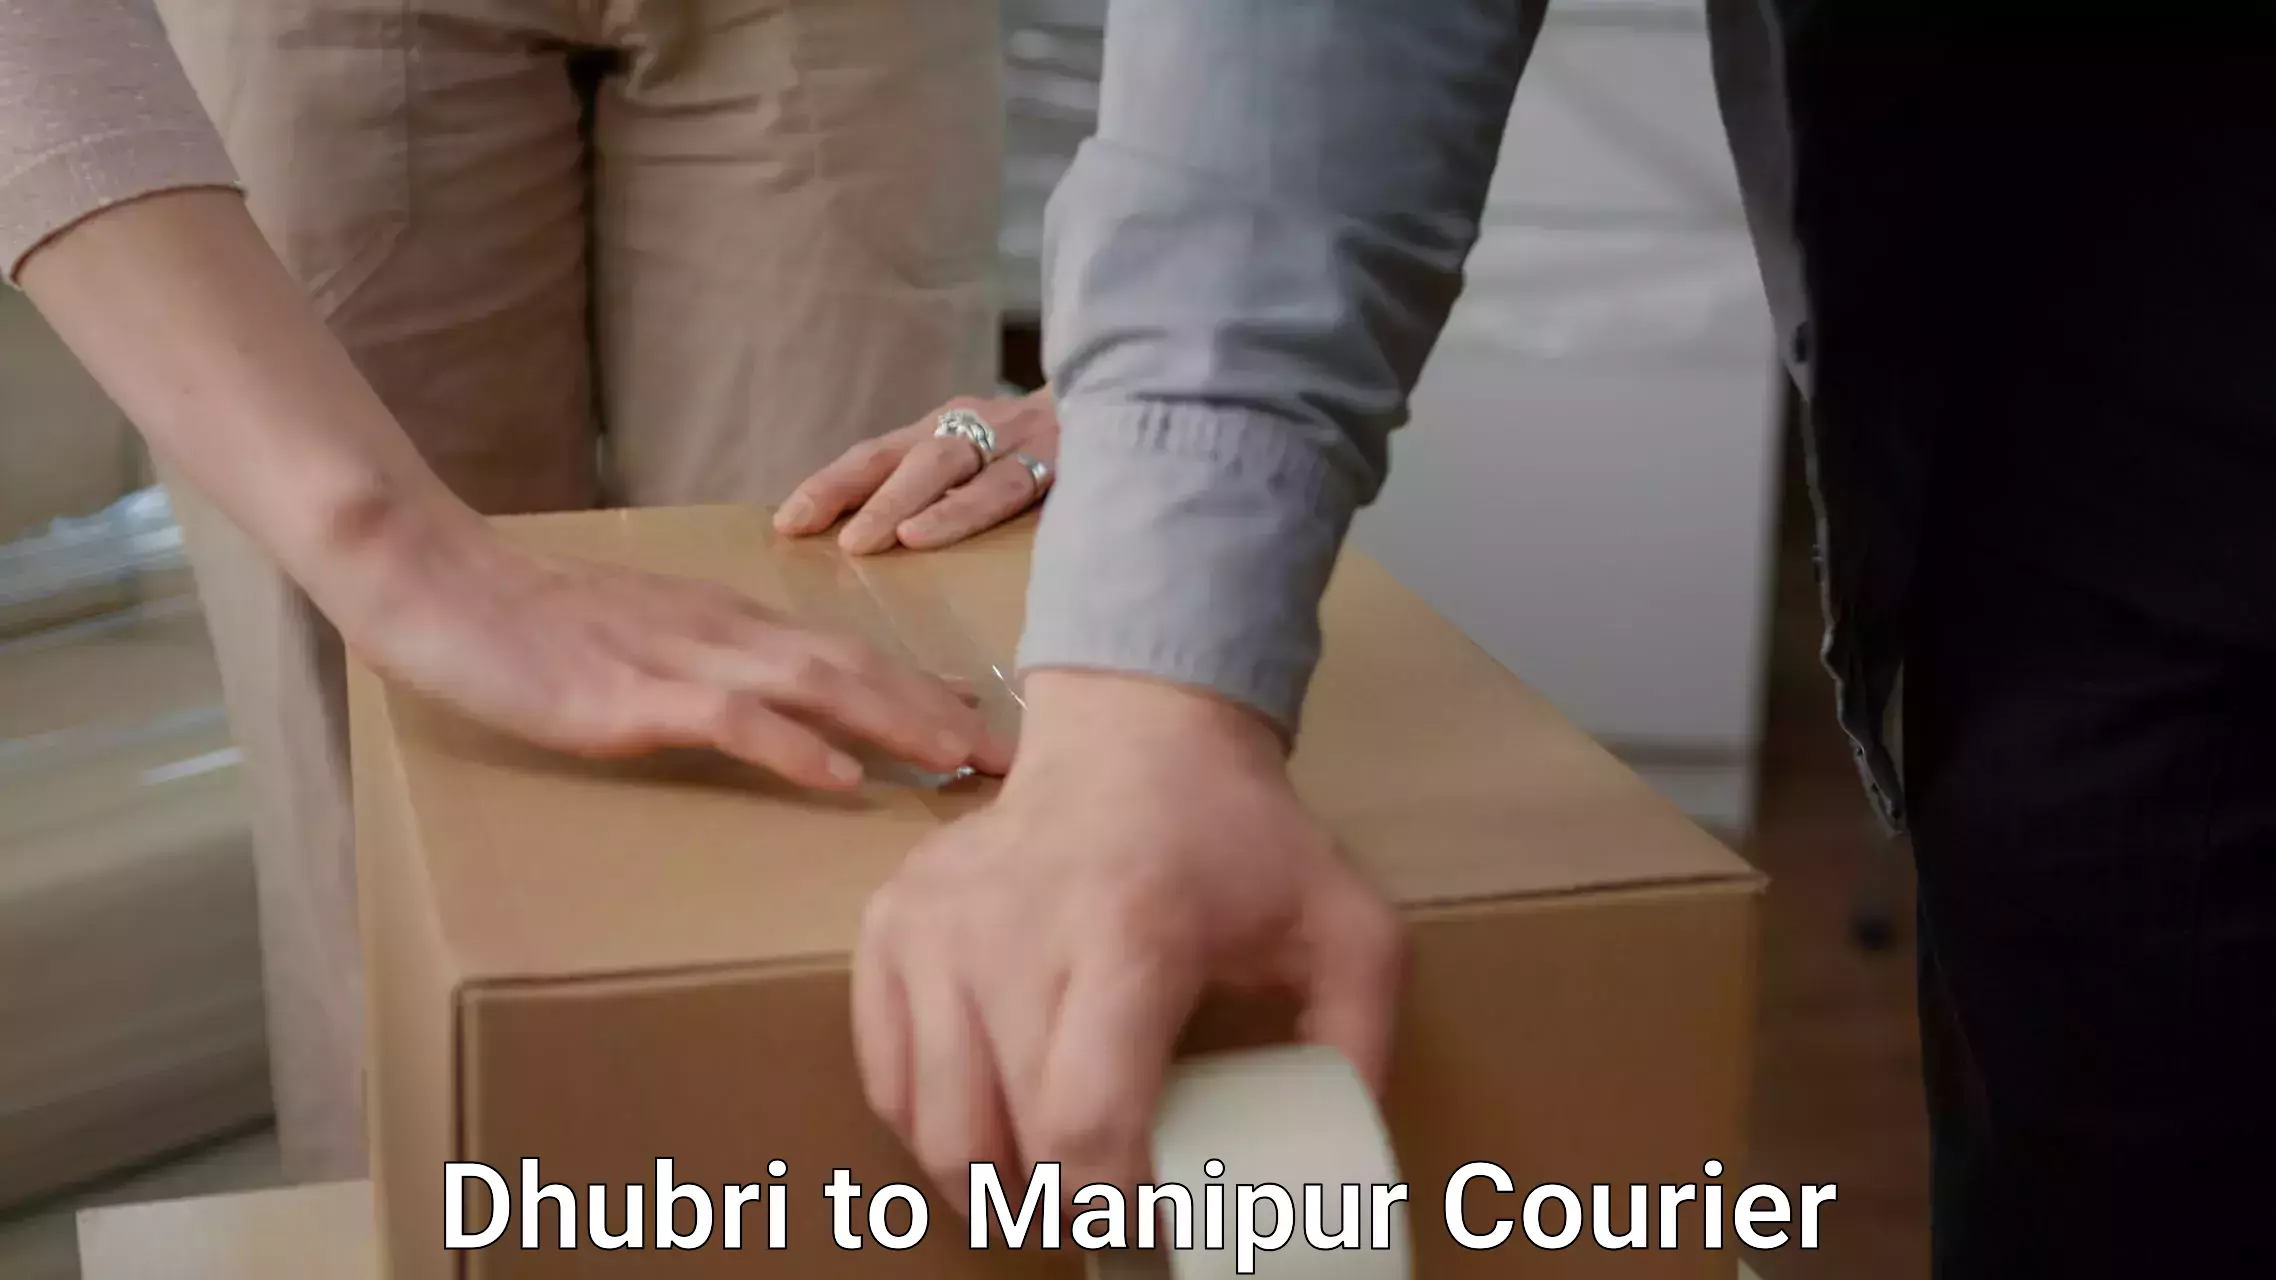 Furniture delivery service Dhubri to Senapati